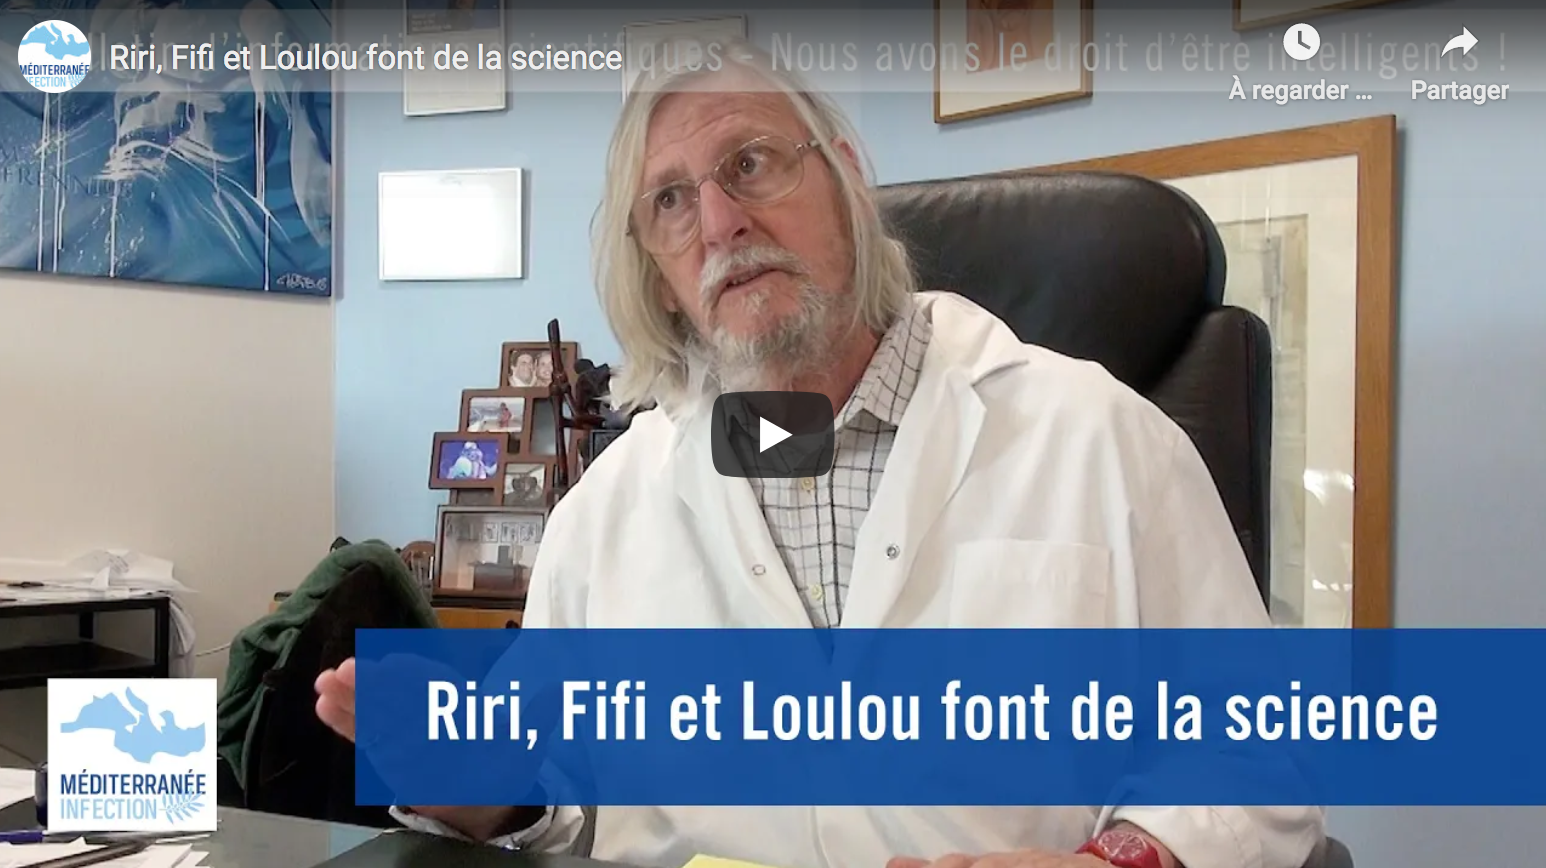 Riri, Fifi et Loulou font de la science (Pr Didier Raoult)